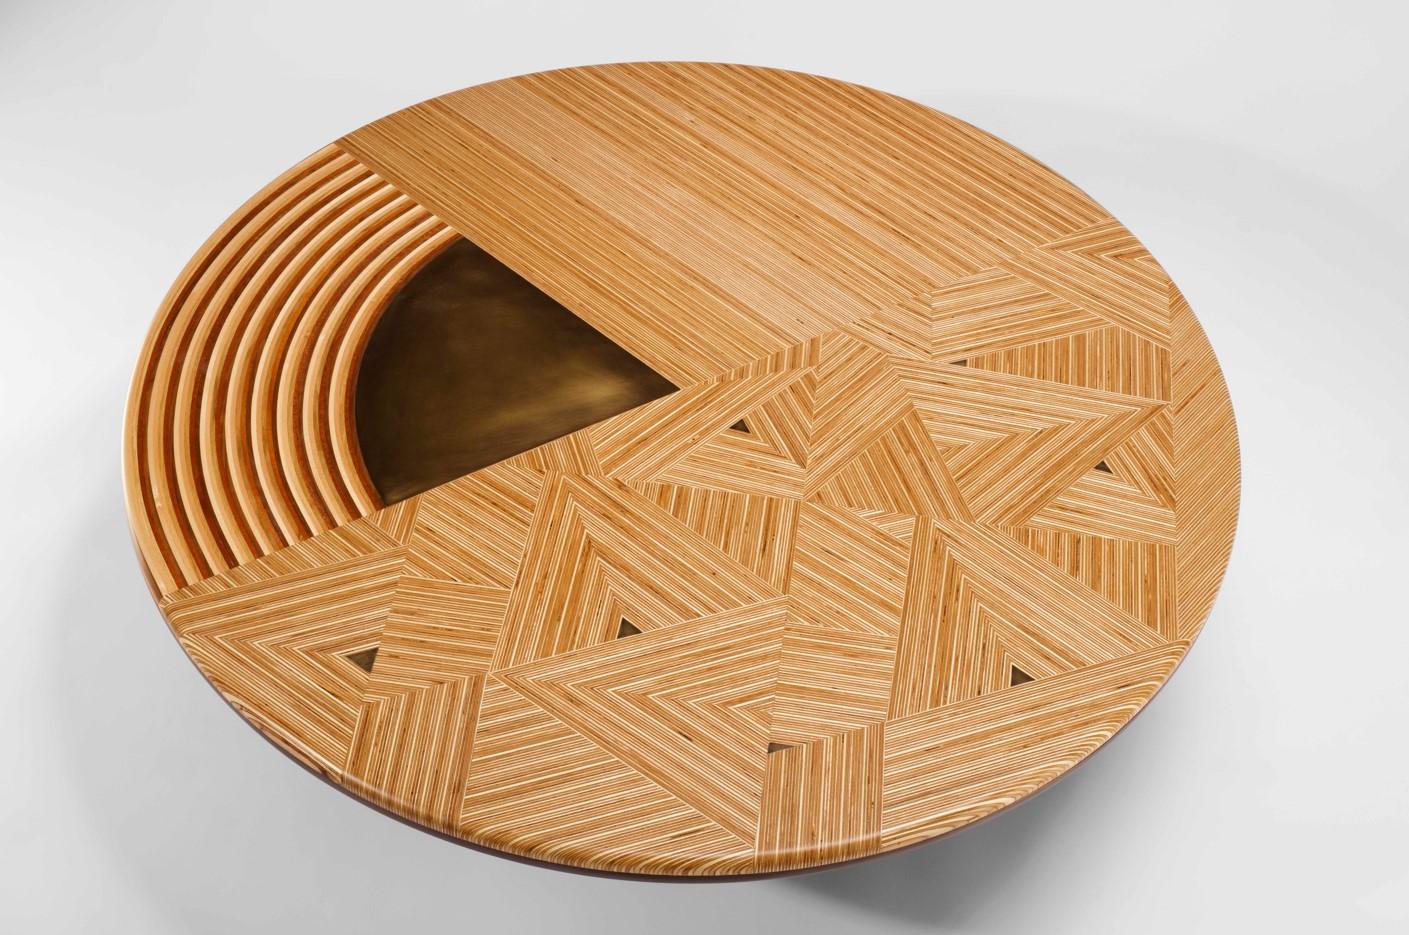 Der Couchtisch von Georges Mohasseb ist ein Beispiel für die harmonische Verschmelzung von traditioneller Handwerkskunst, innovativem Design und einer sorgfältigen Beachtung der MATERIALIEN, die ihn einzigartig und besonders machen.

Entscheidend